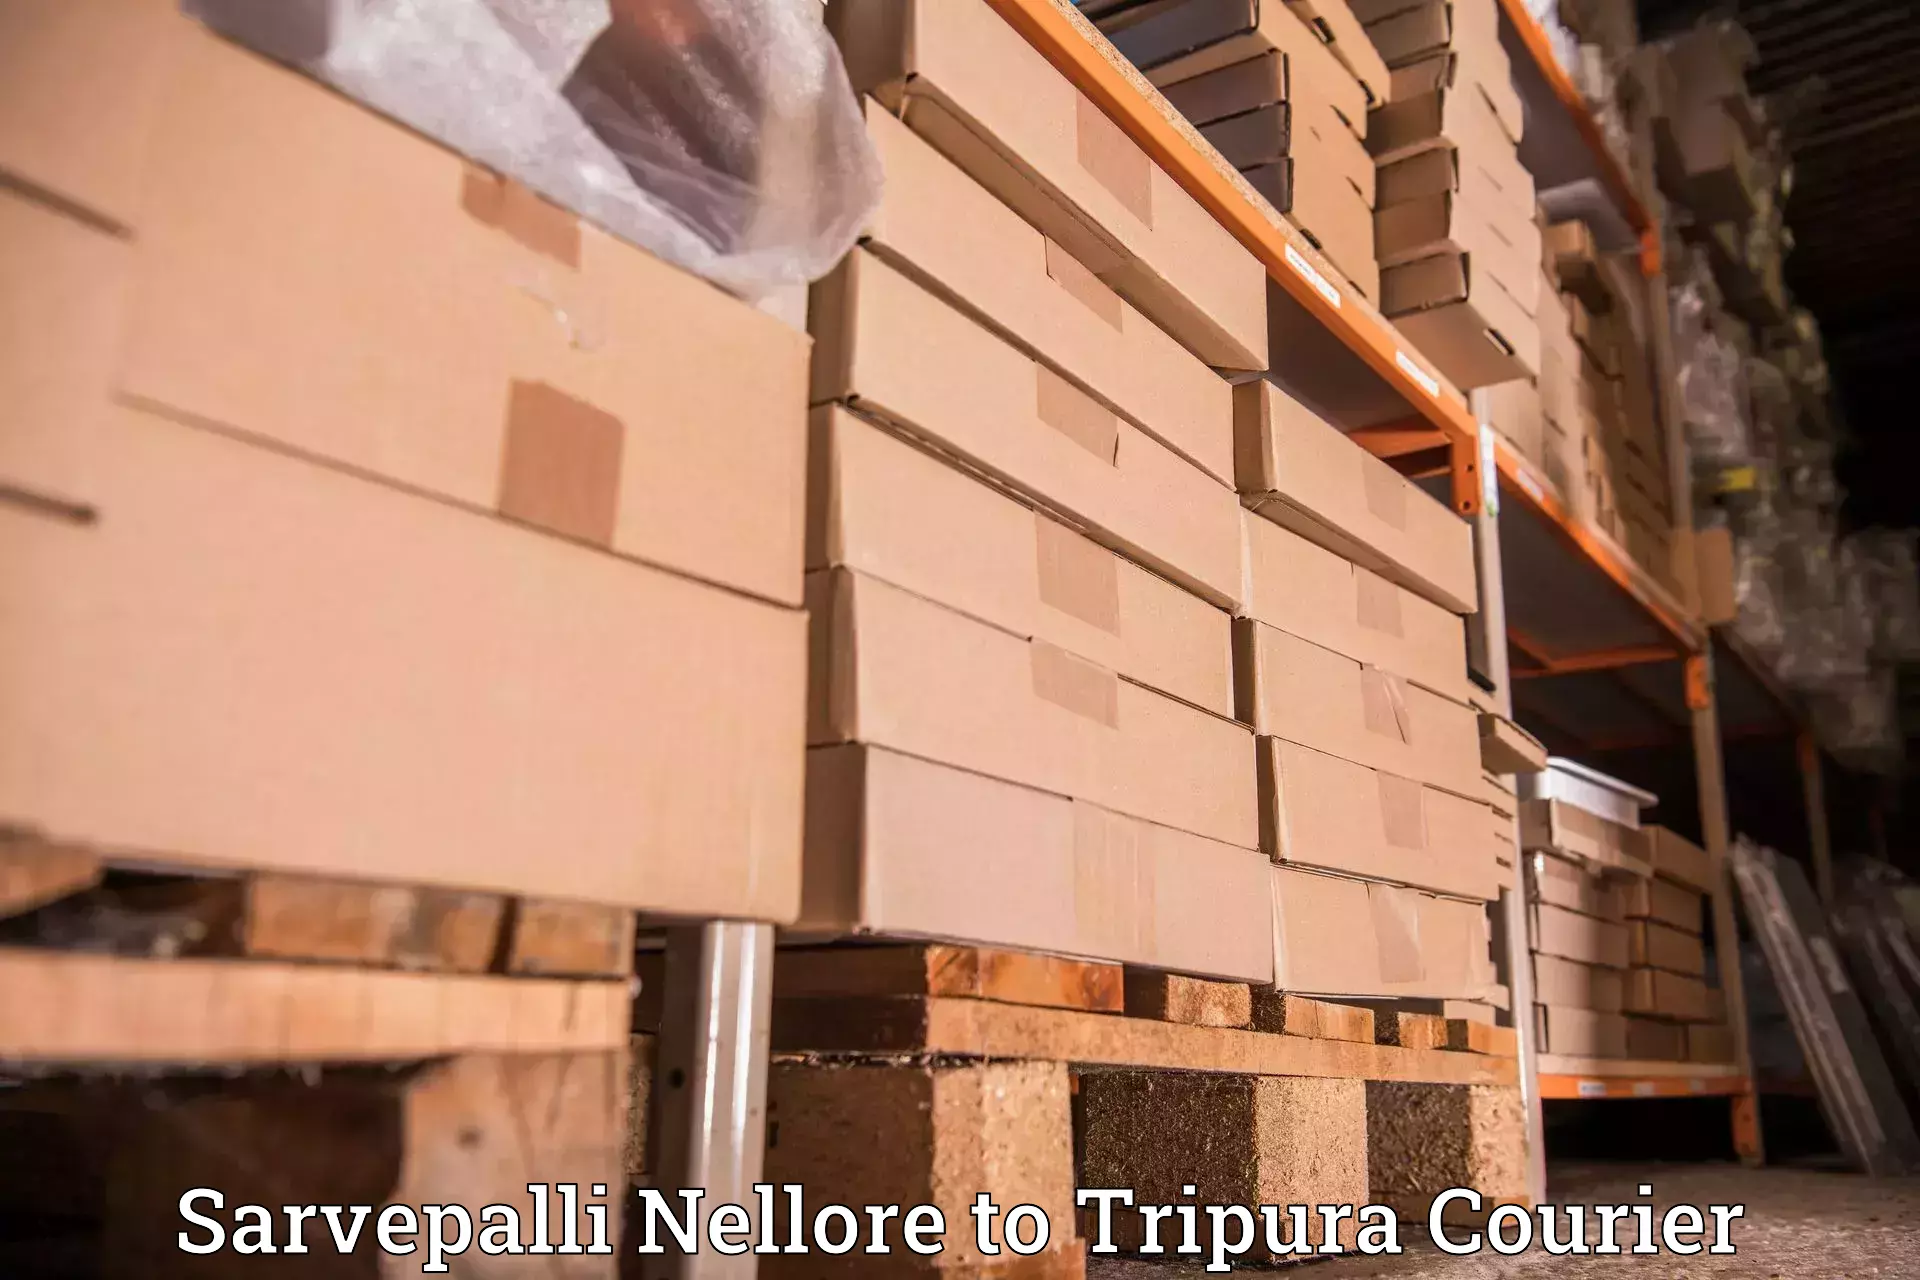 Express logistics providers Sarvepalli Nellore to IIIT Agartala